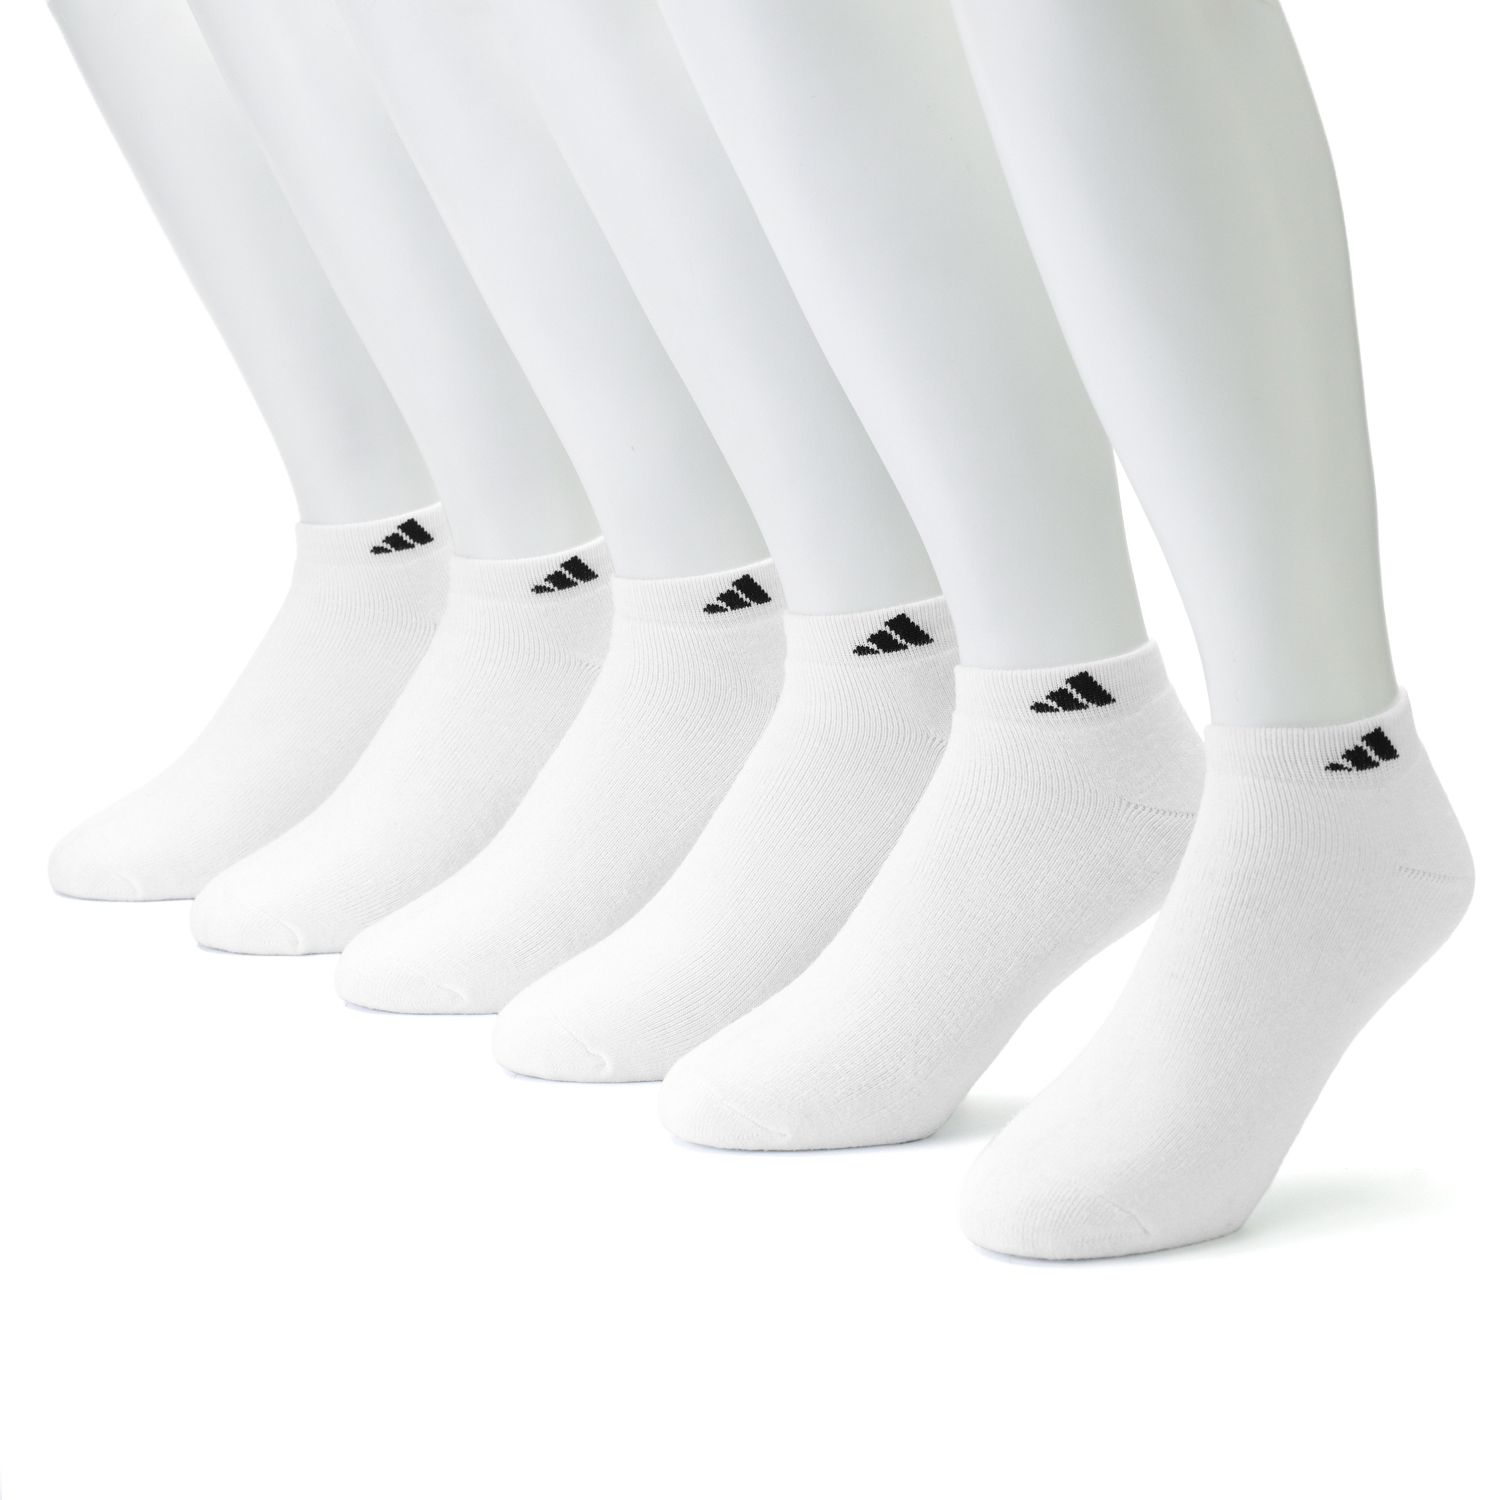 Men's adidas 6-pk. Ankle Socks